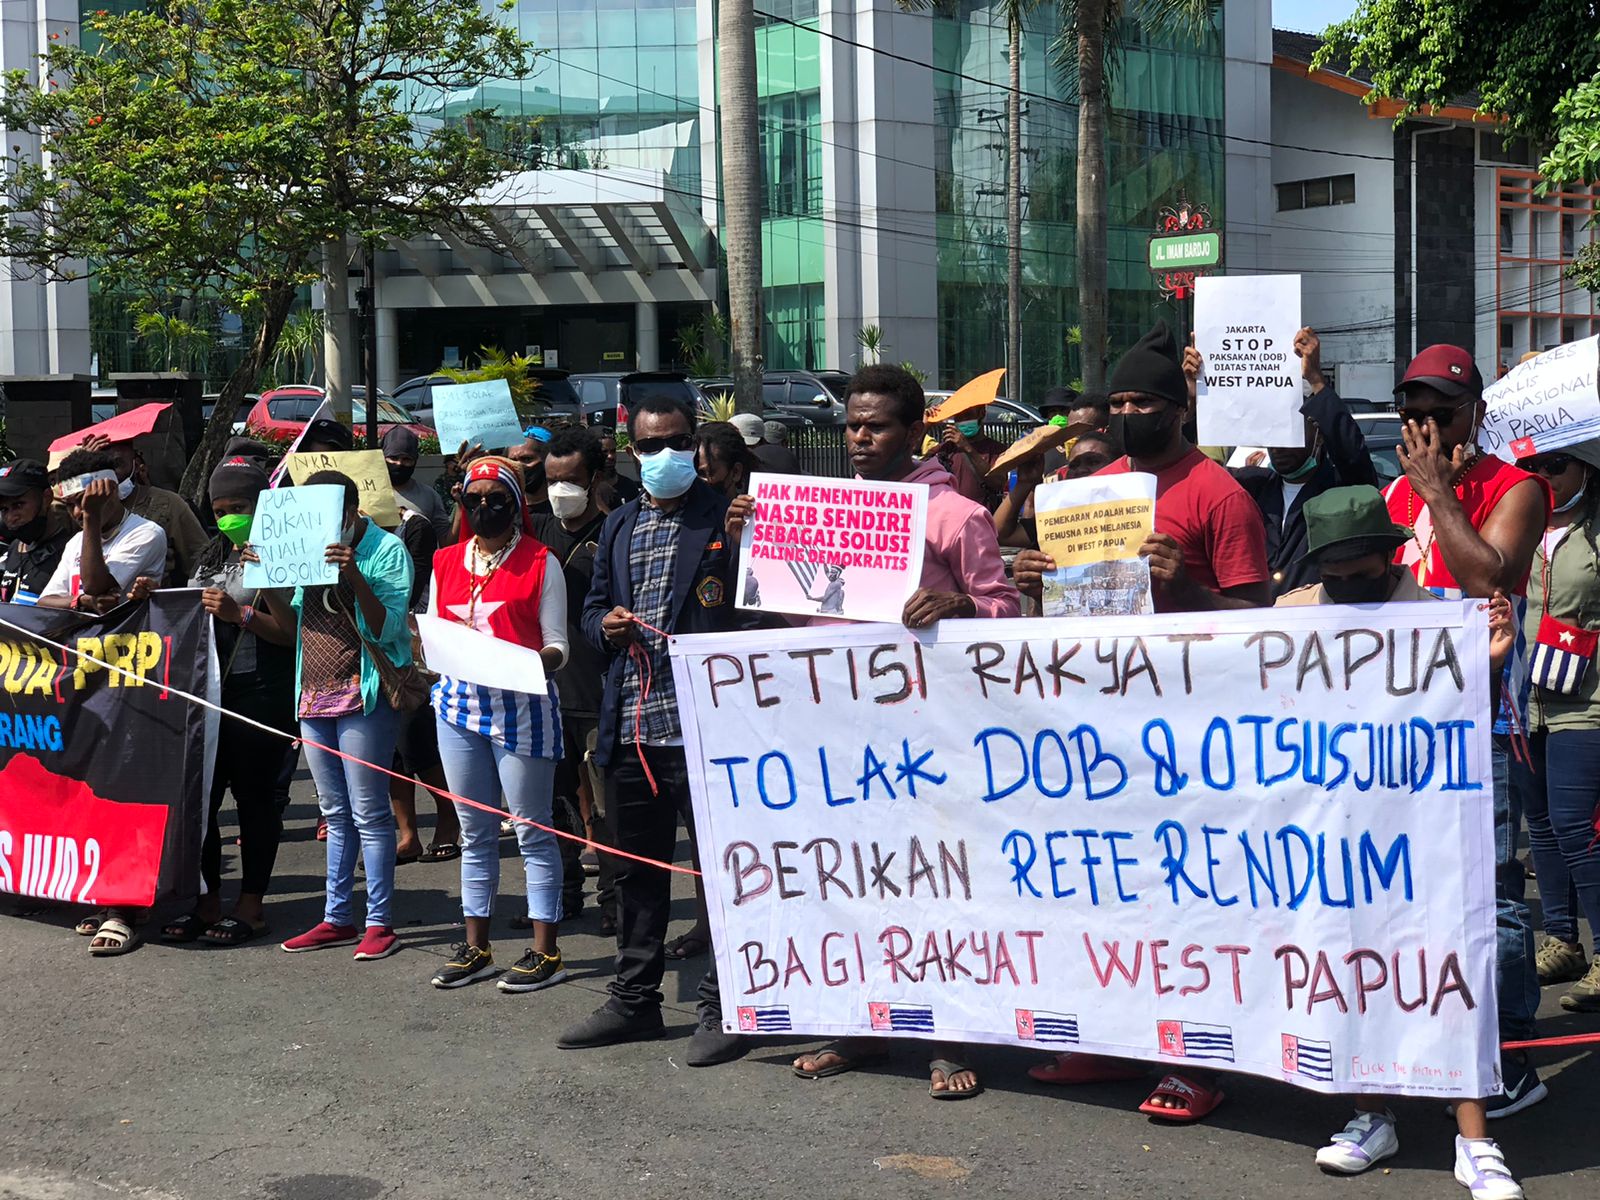 Petisi Rakyat Papua Semarang: UU Otsus Jilid 2 dan Pembentukan DOB Tak Selesaikan Akar Masalah di Papua